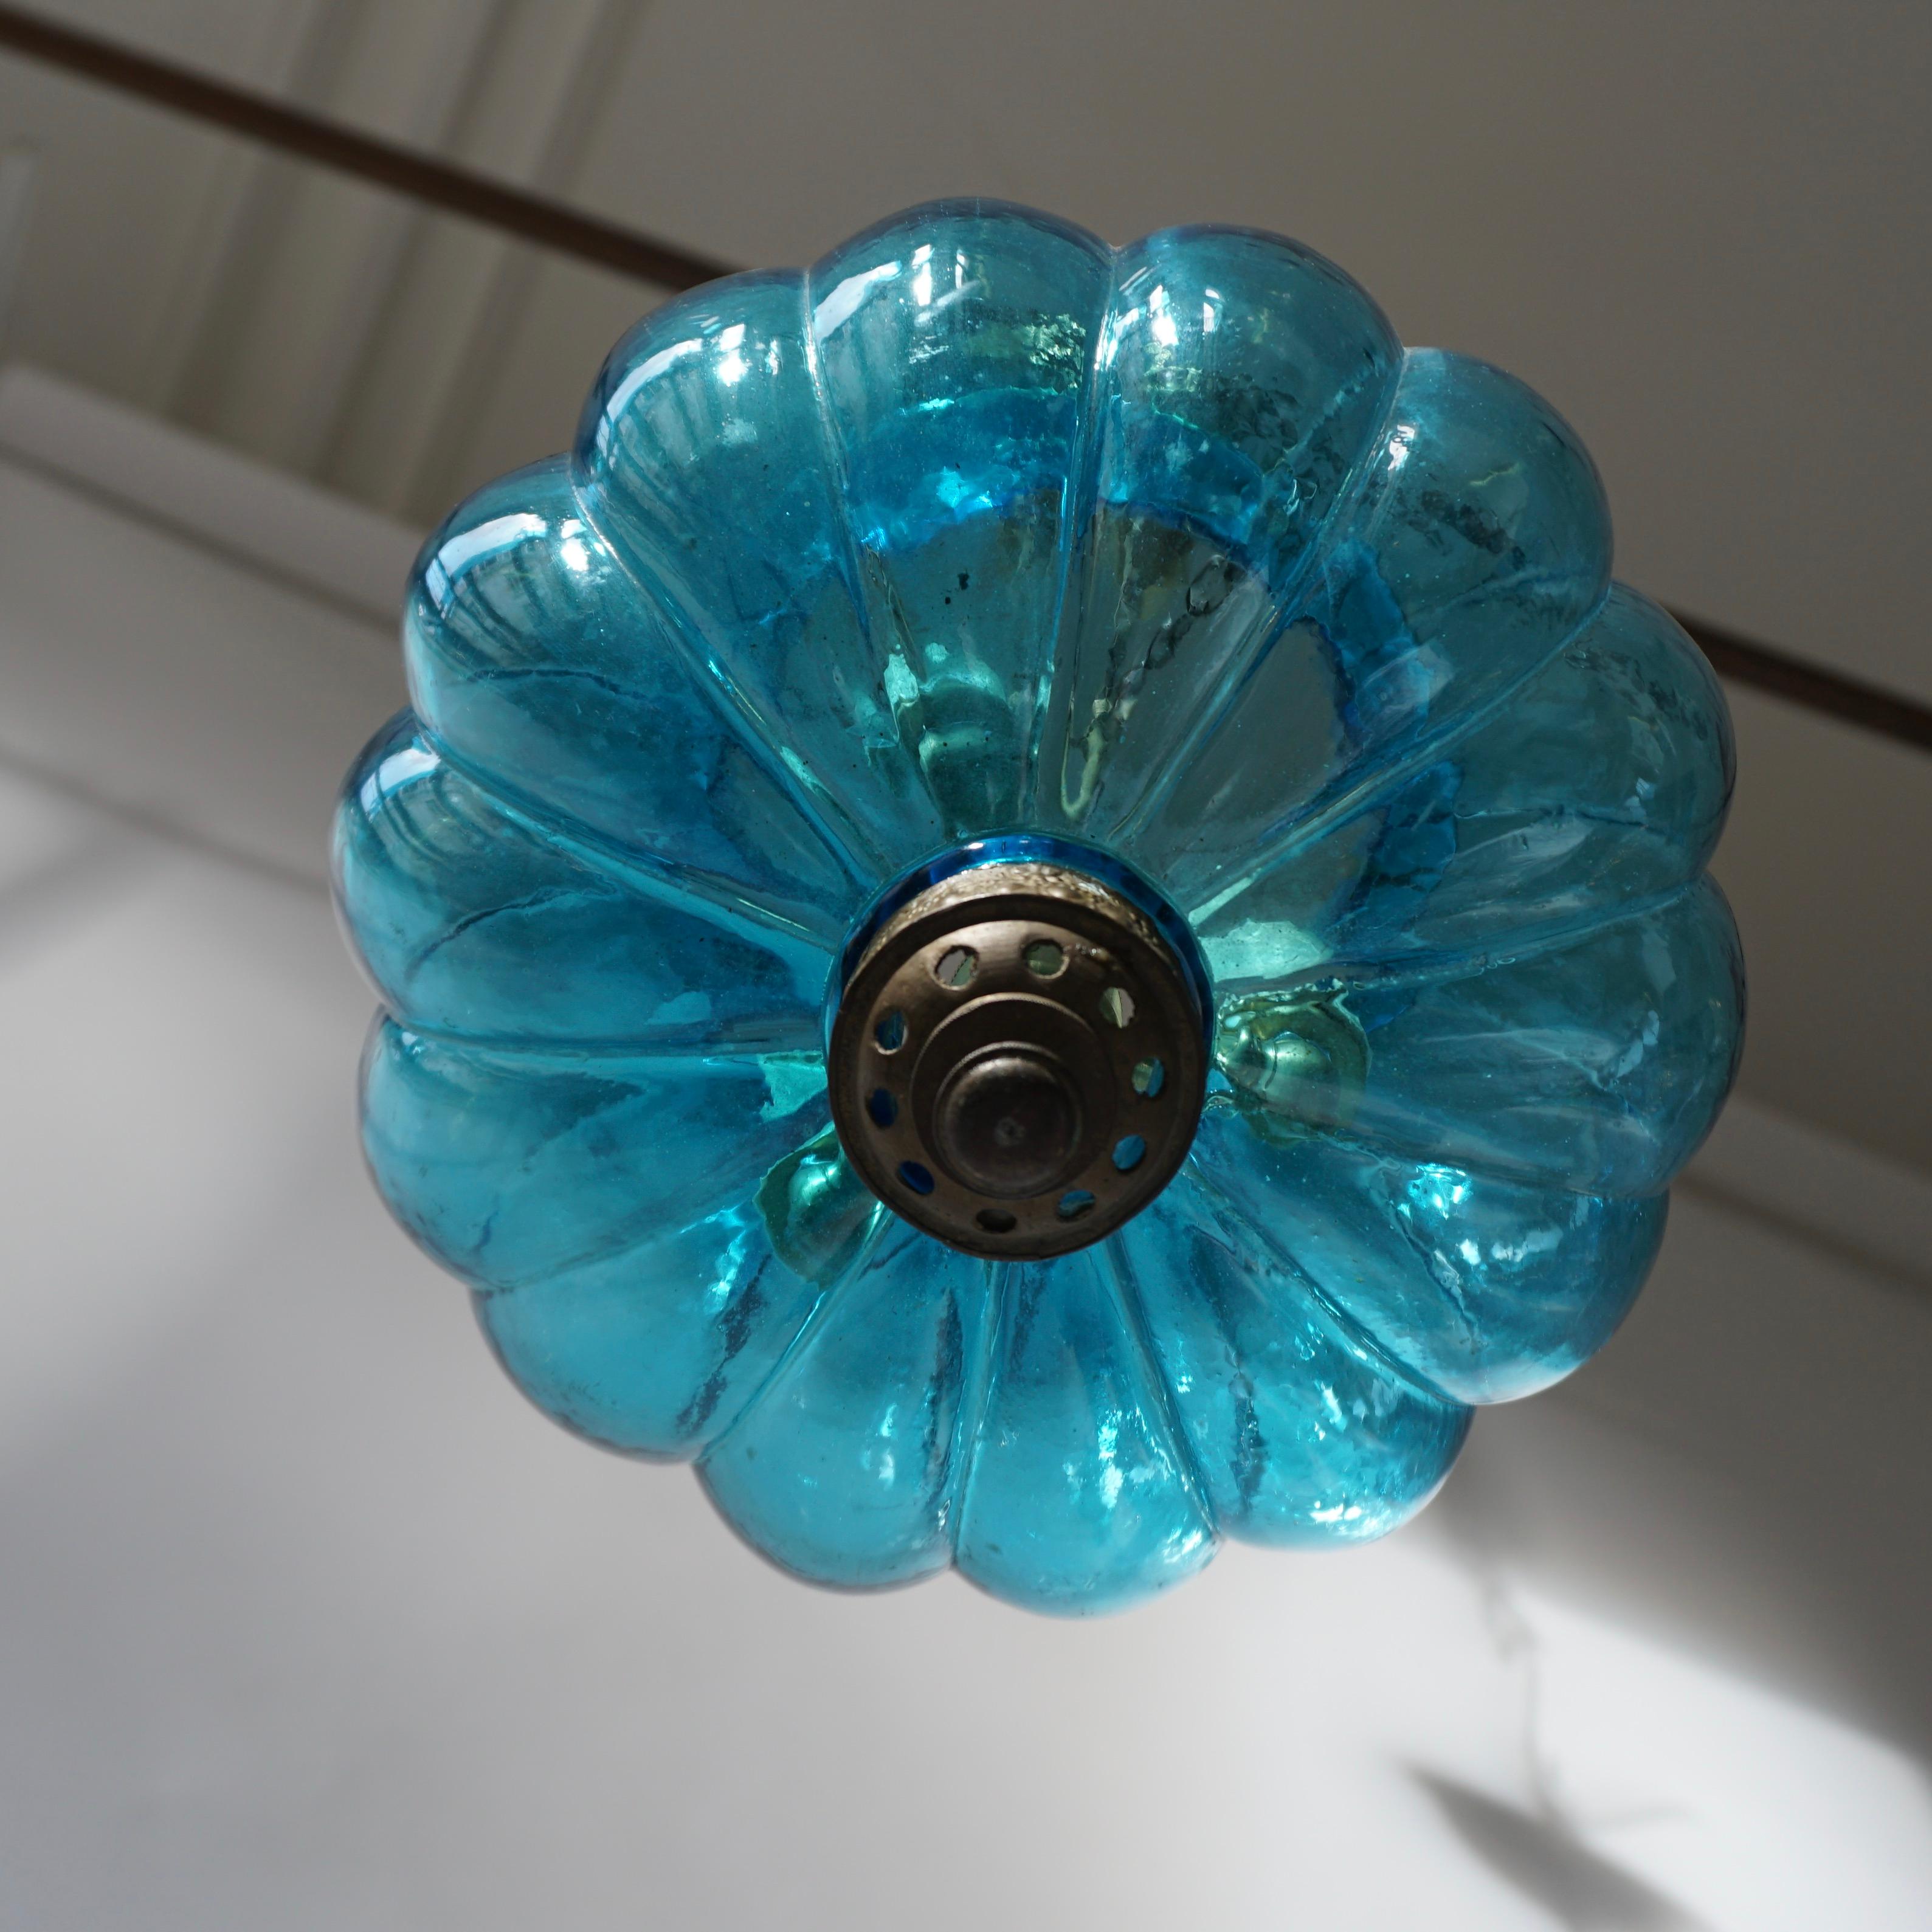 Anhänger in blauem Kristall, geschaffen von De Grelle Val St. Lambert im Jahr 1950 in Belgien.
Maße: Durchmesser 23 cm.
Gesamthöhe einschließlich Kette und Baldachin 100 cm.